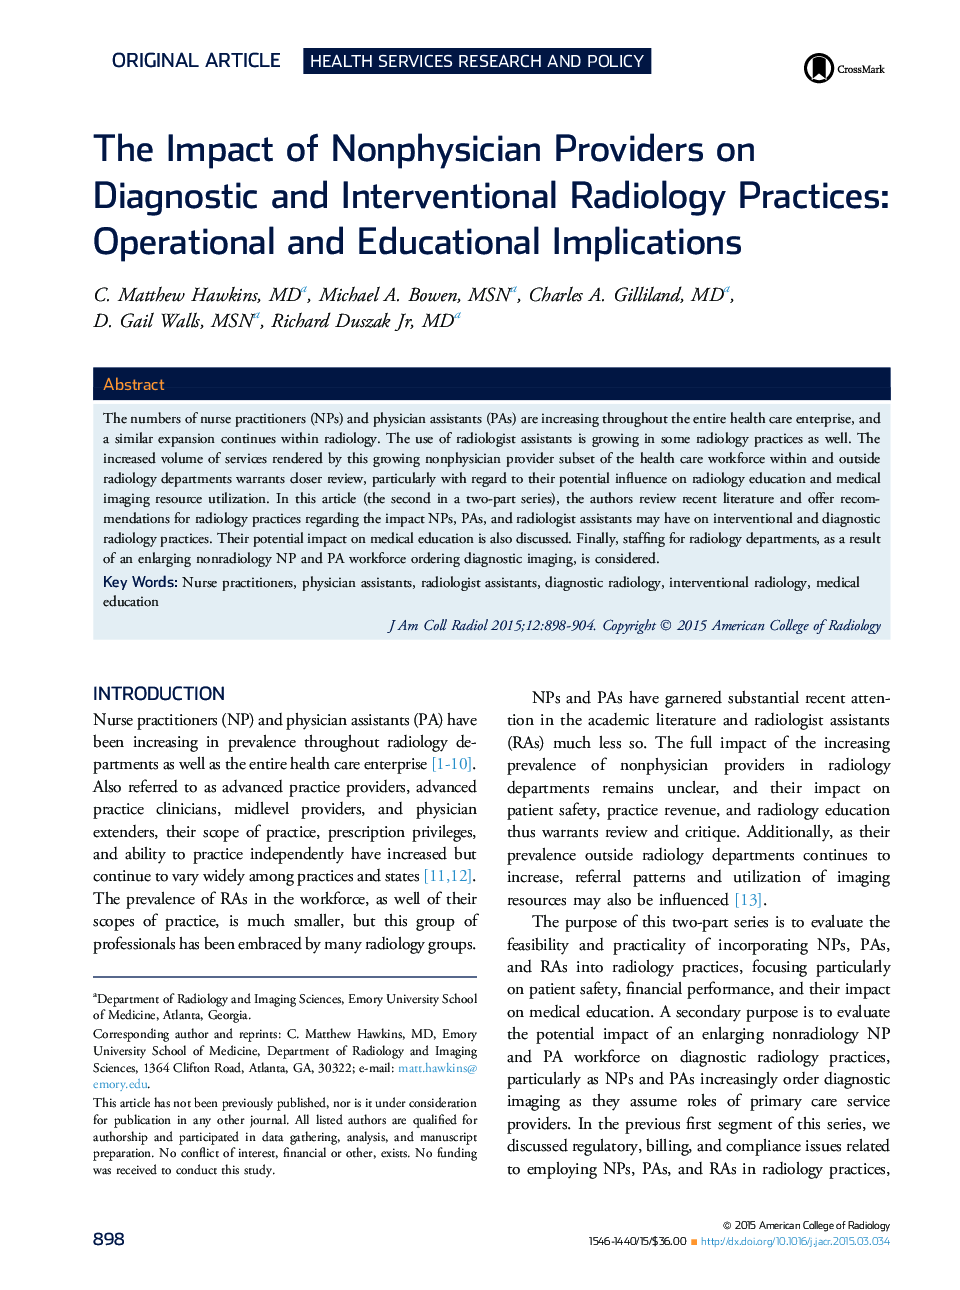 تأثیر ارائه دهندگان غیرفیزیک در روش های رادیولوژی تشخیصی و مداخله: پیامدهای عملیاتی و آموزشی 